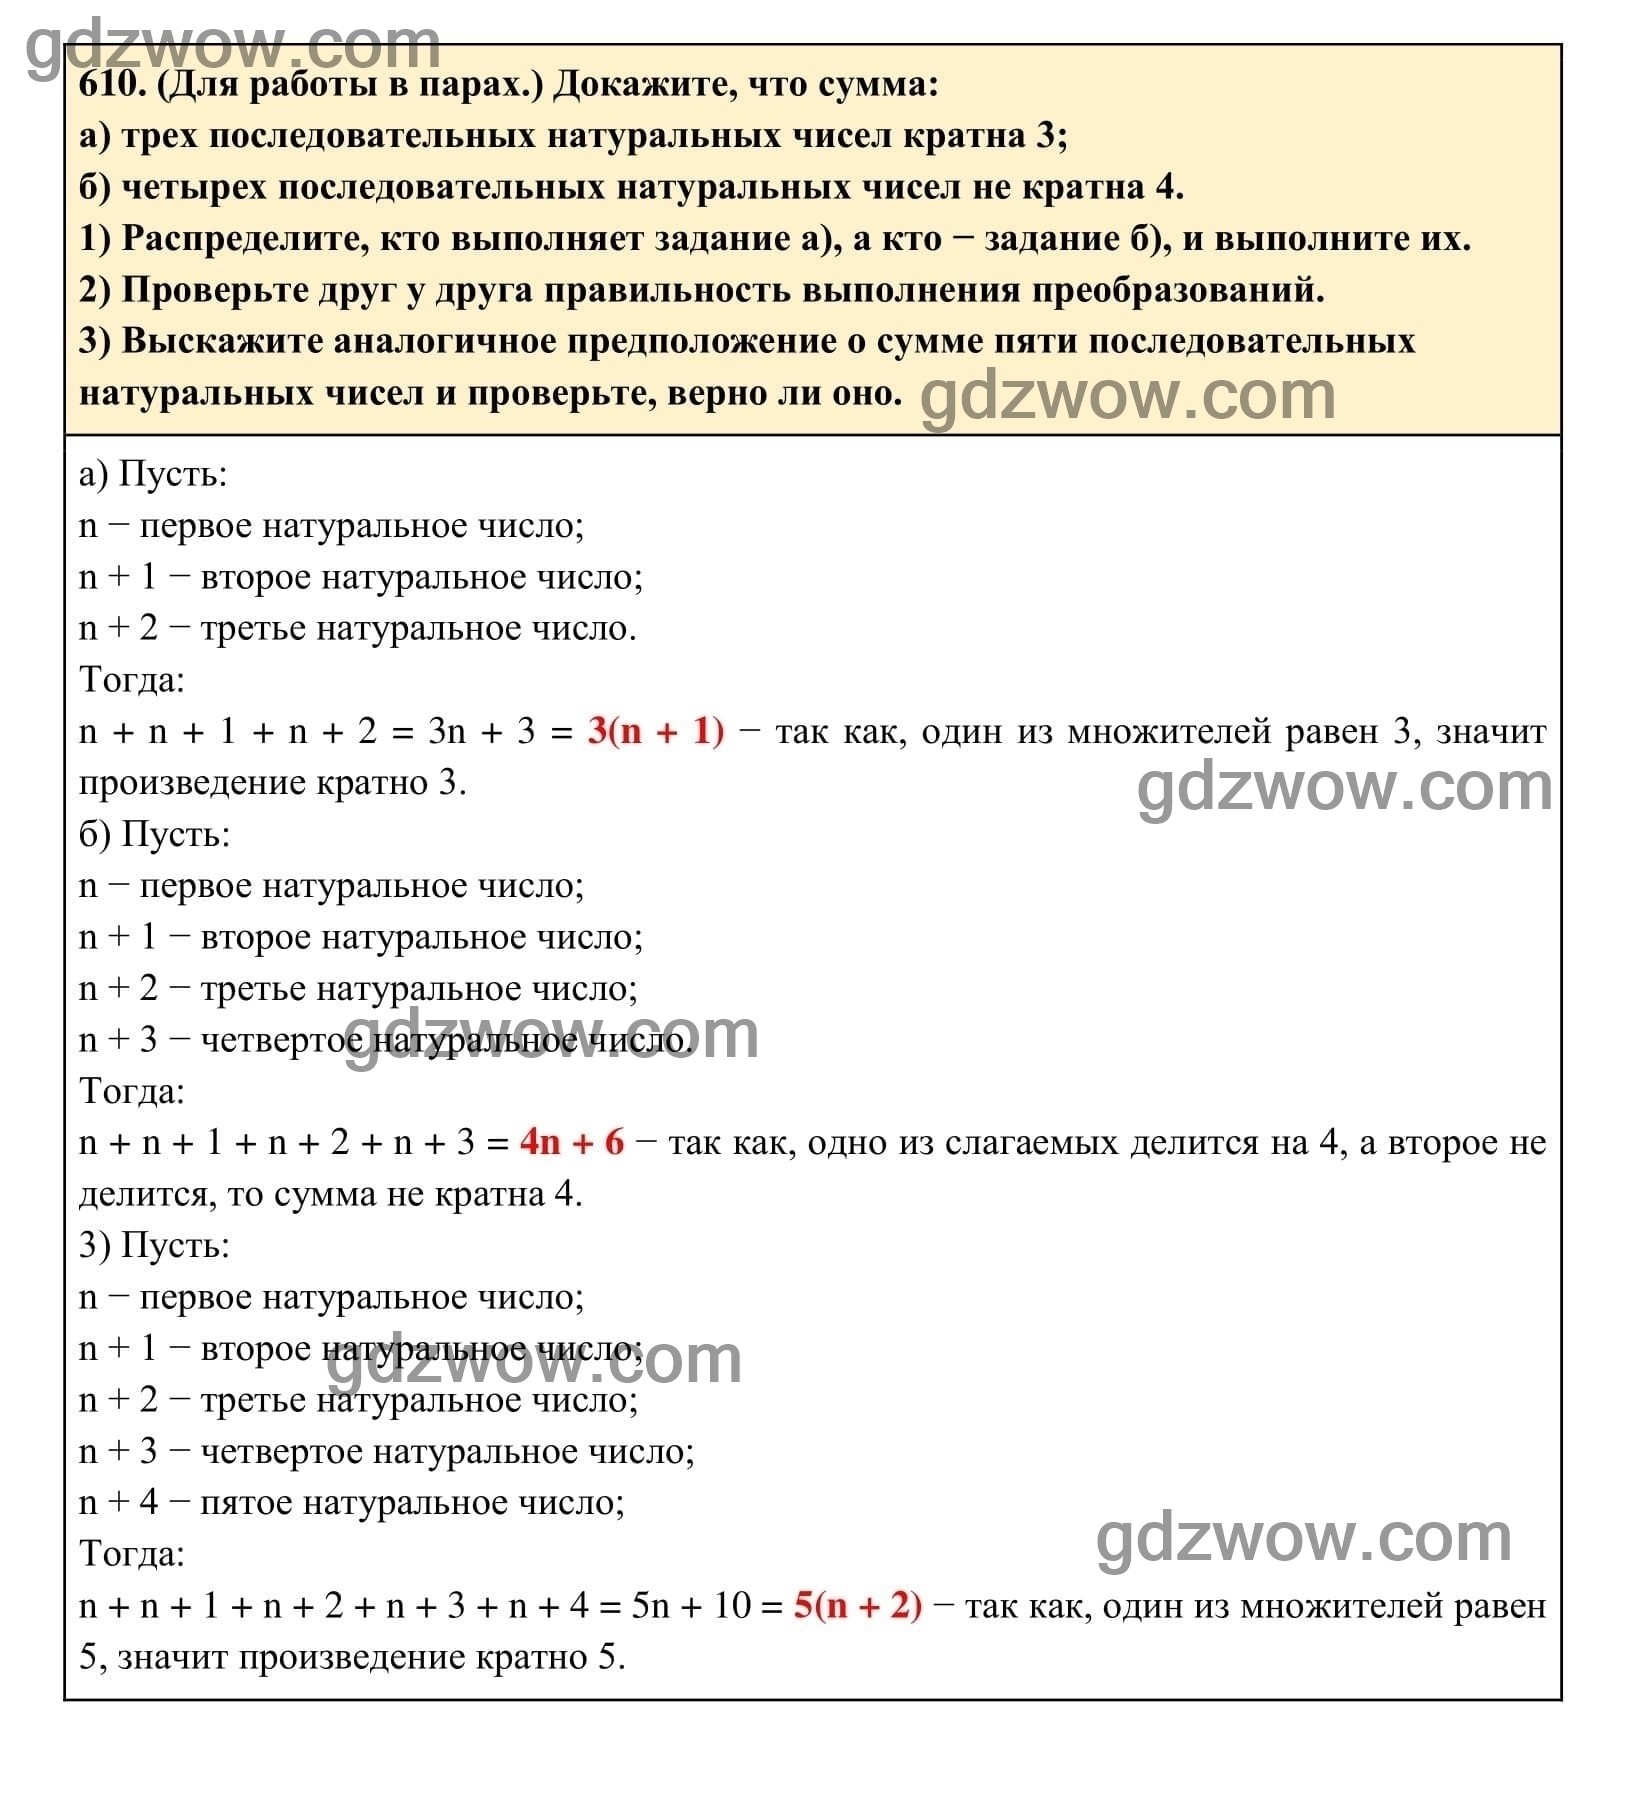 Упражнение 610 - ГДЗ по Алгебре 7 класс Учебник Макарычев (решебник) - GDZwow